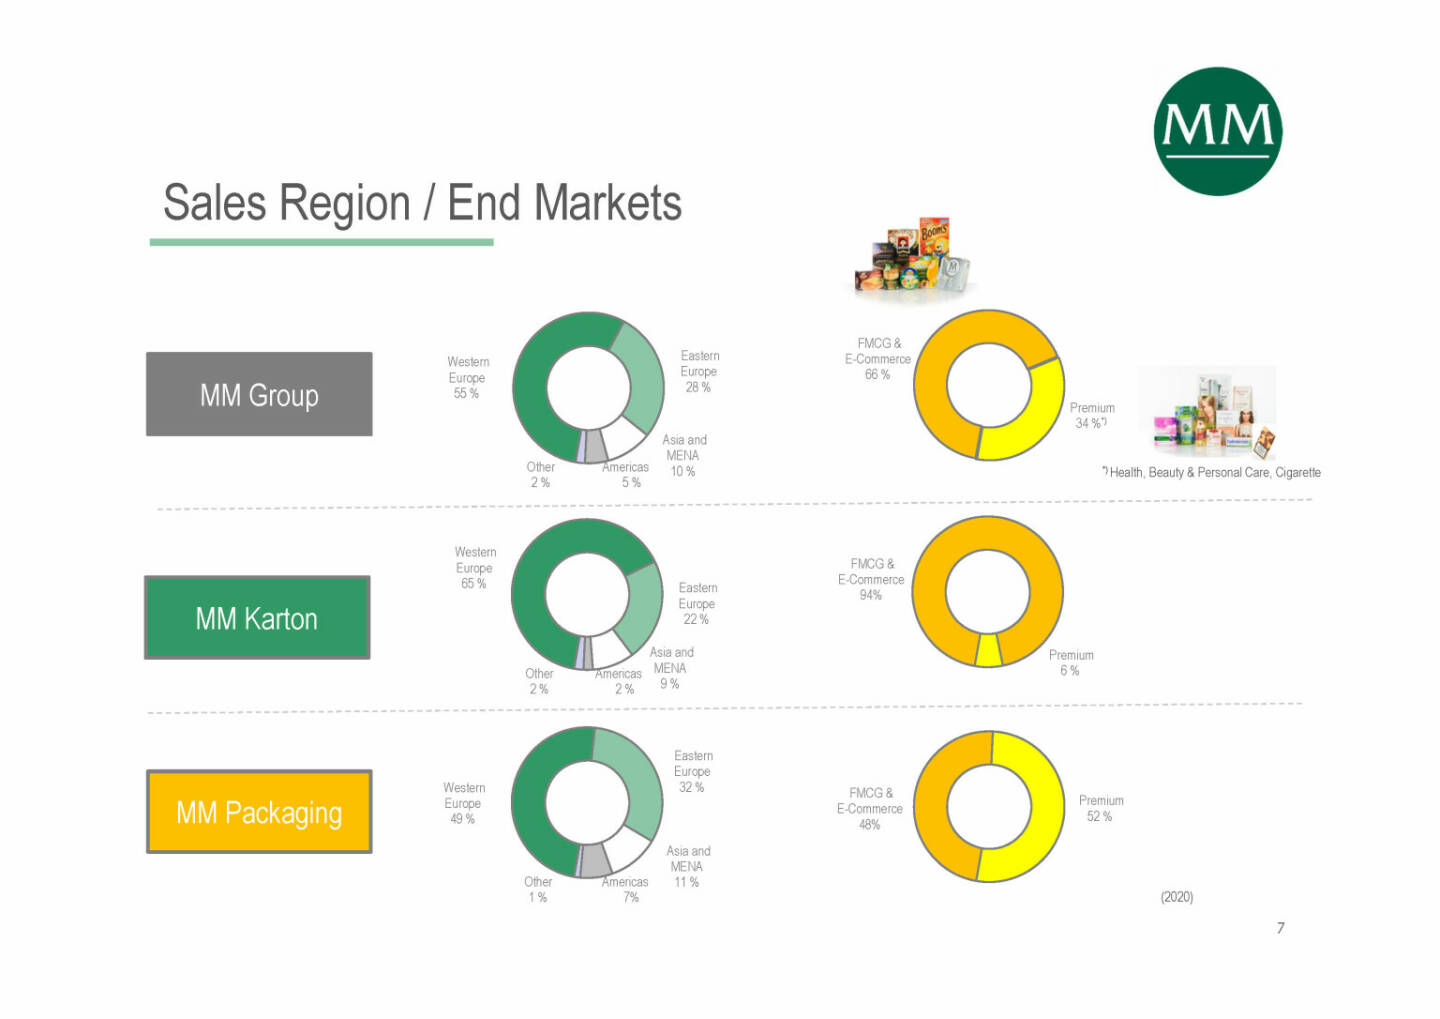 Mayr-Melnhof - Sales Region / End Markets